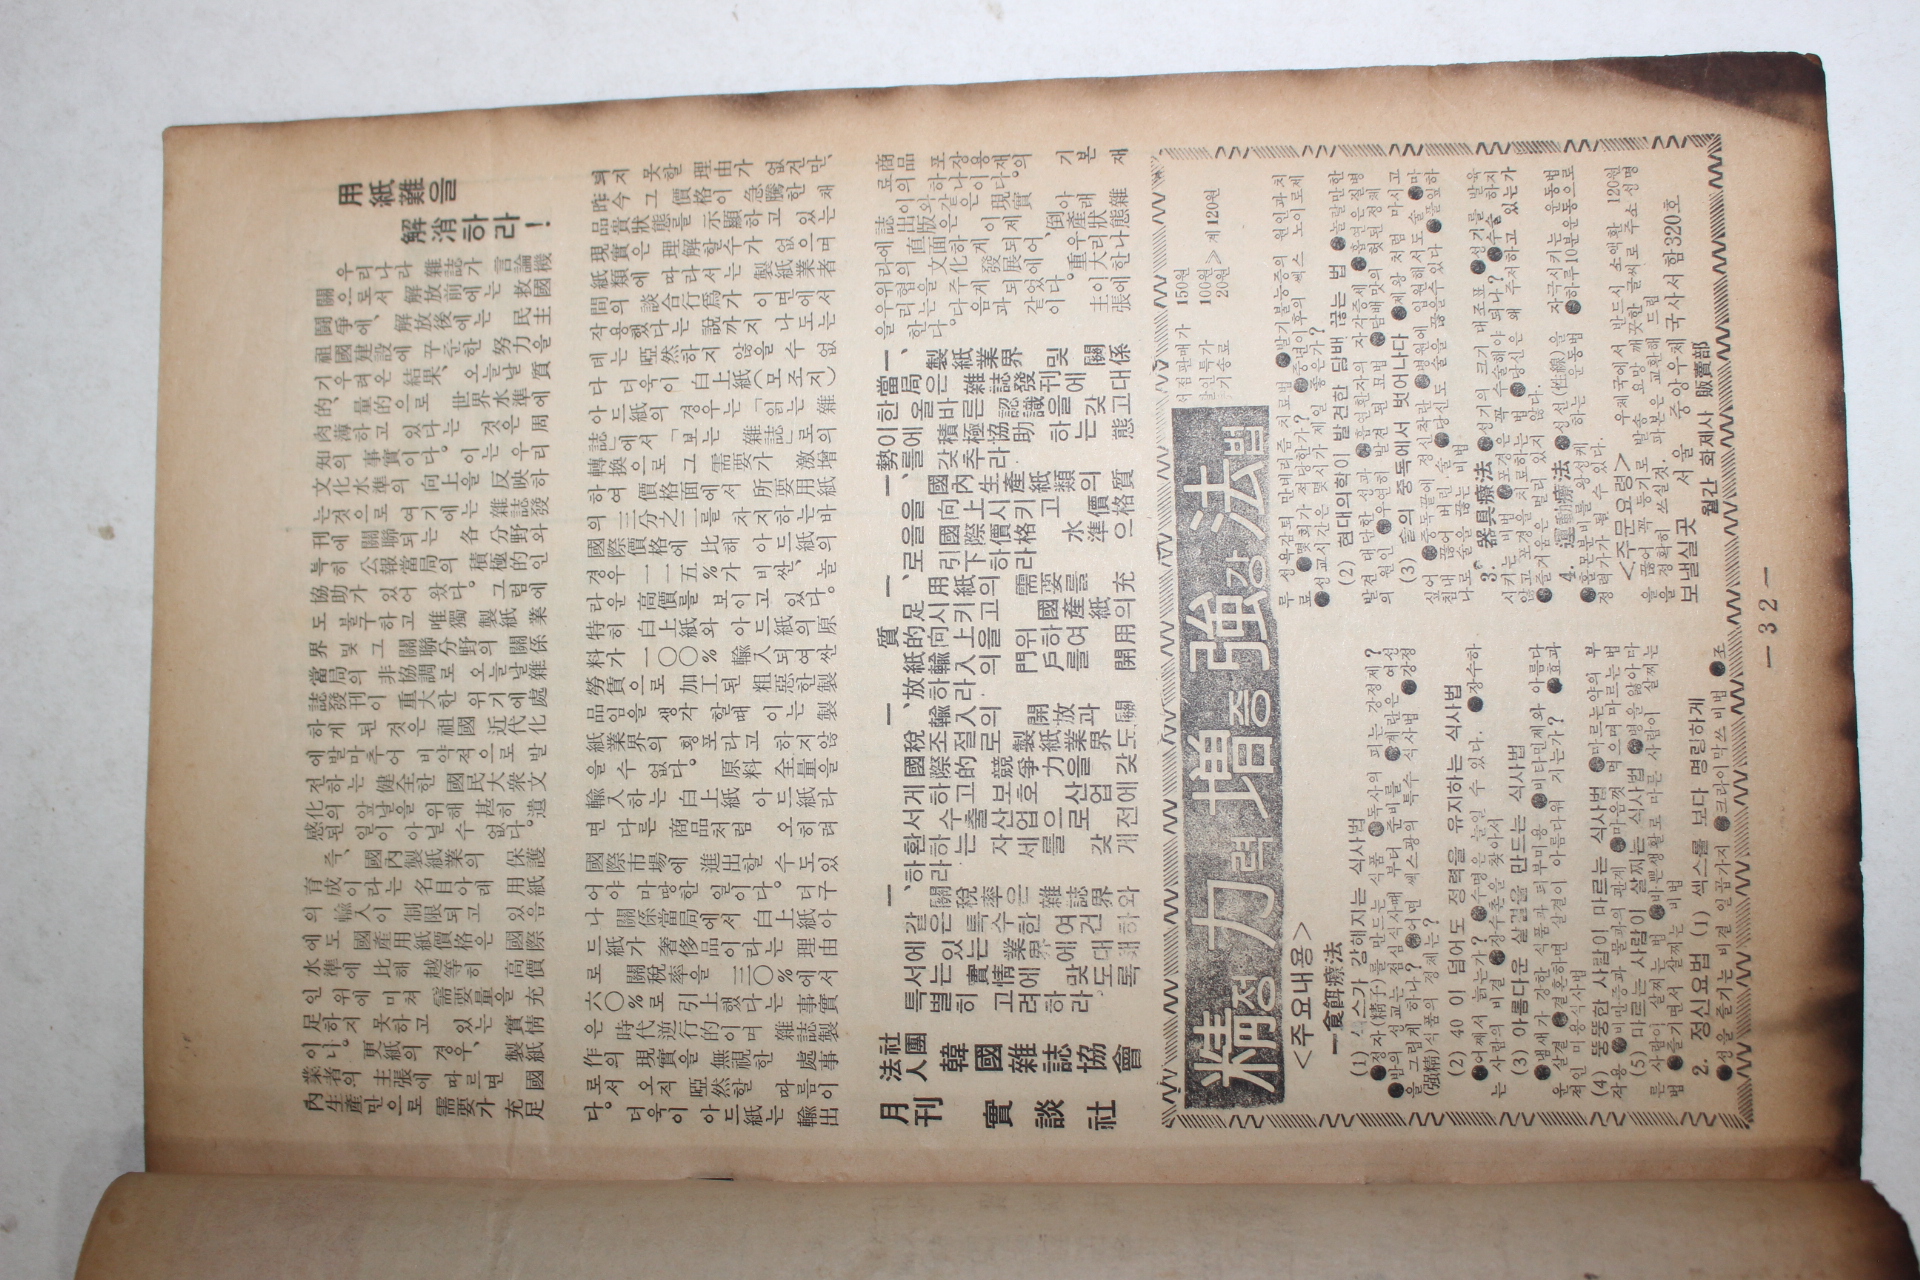 1966년 월간잡지 실담(實談) 6월호